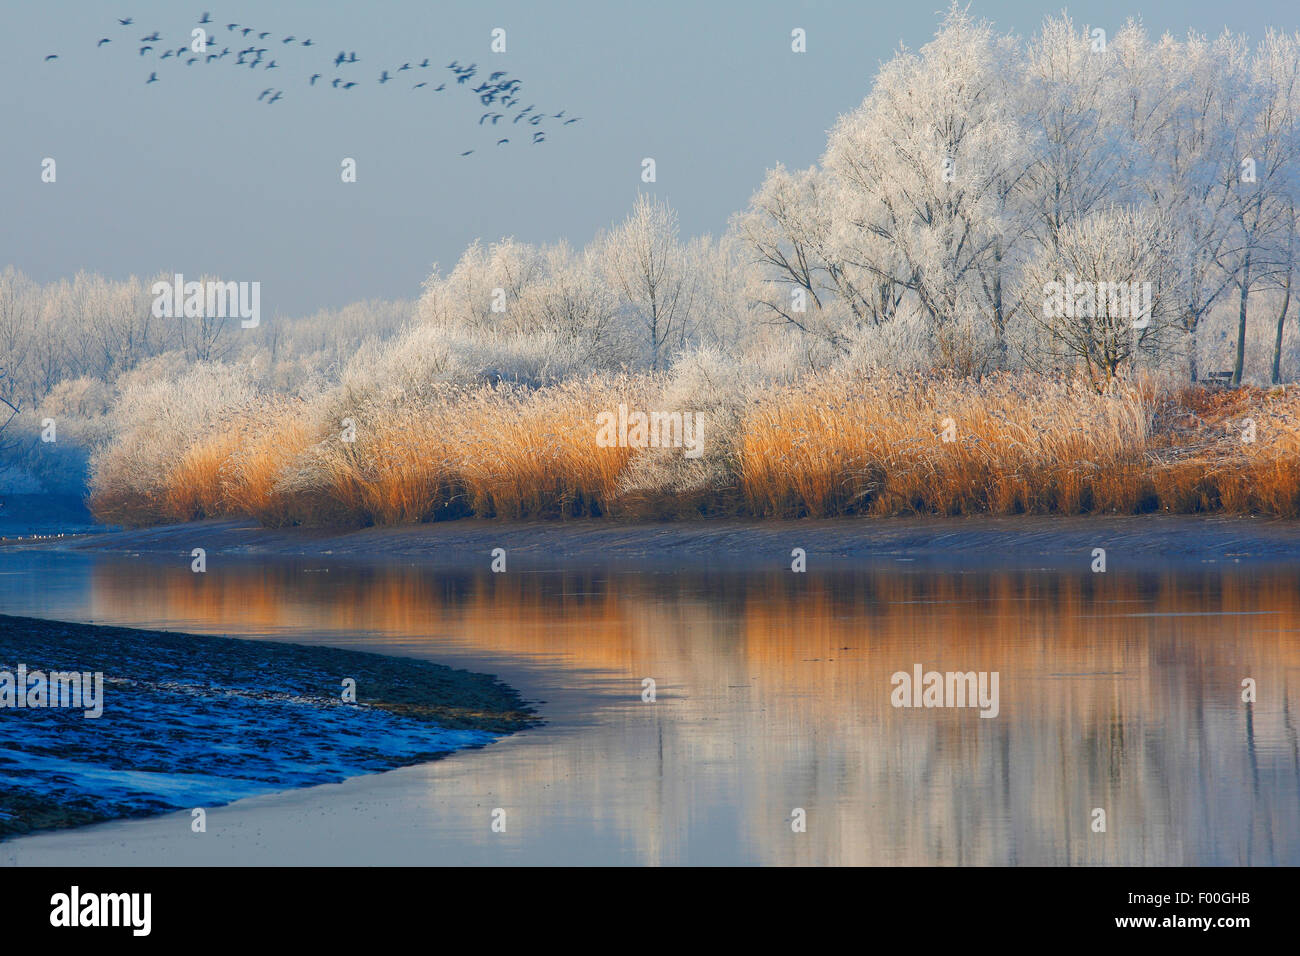 Stormo di oche e di riflessione della coperta di neve alberi e reed fringe lungo il fiume Schelda, Belgio Foto Stock